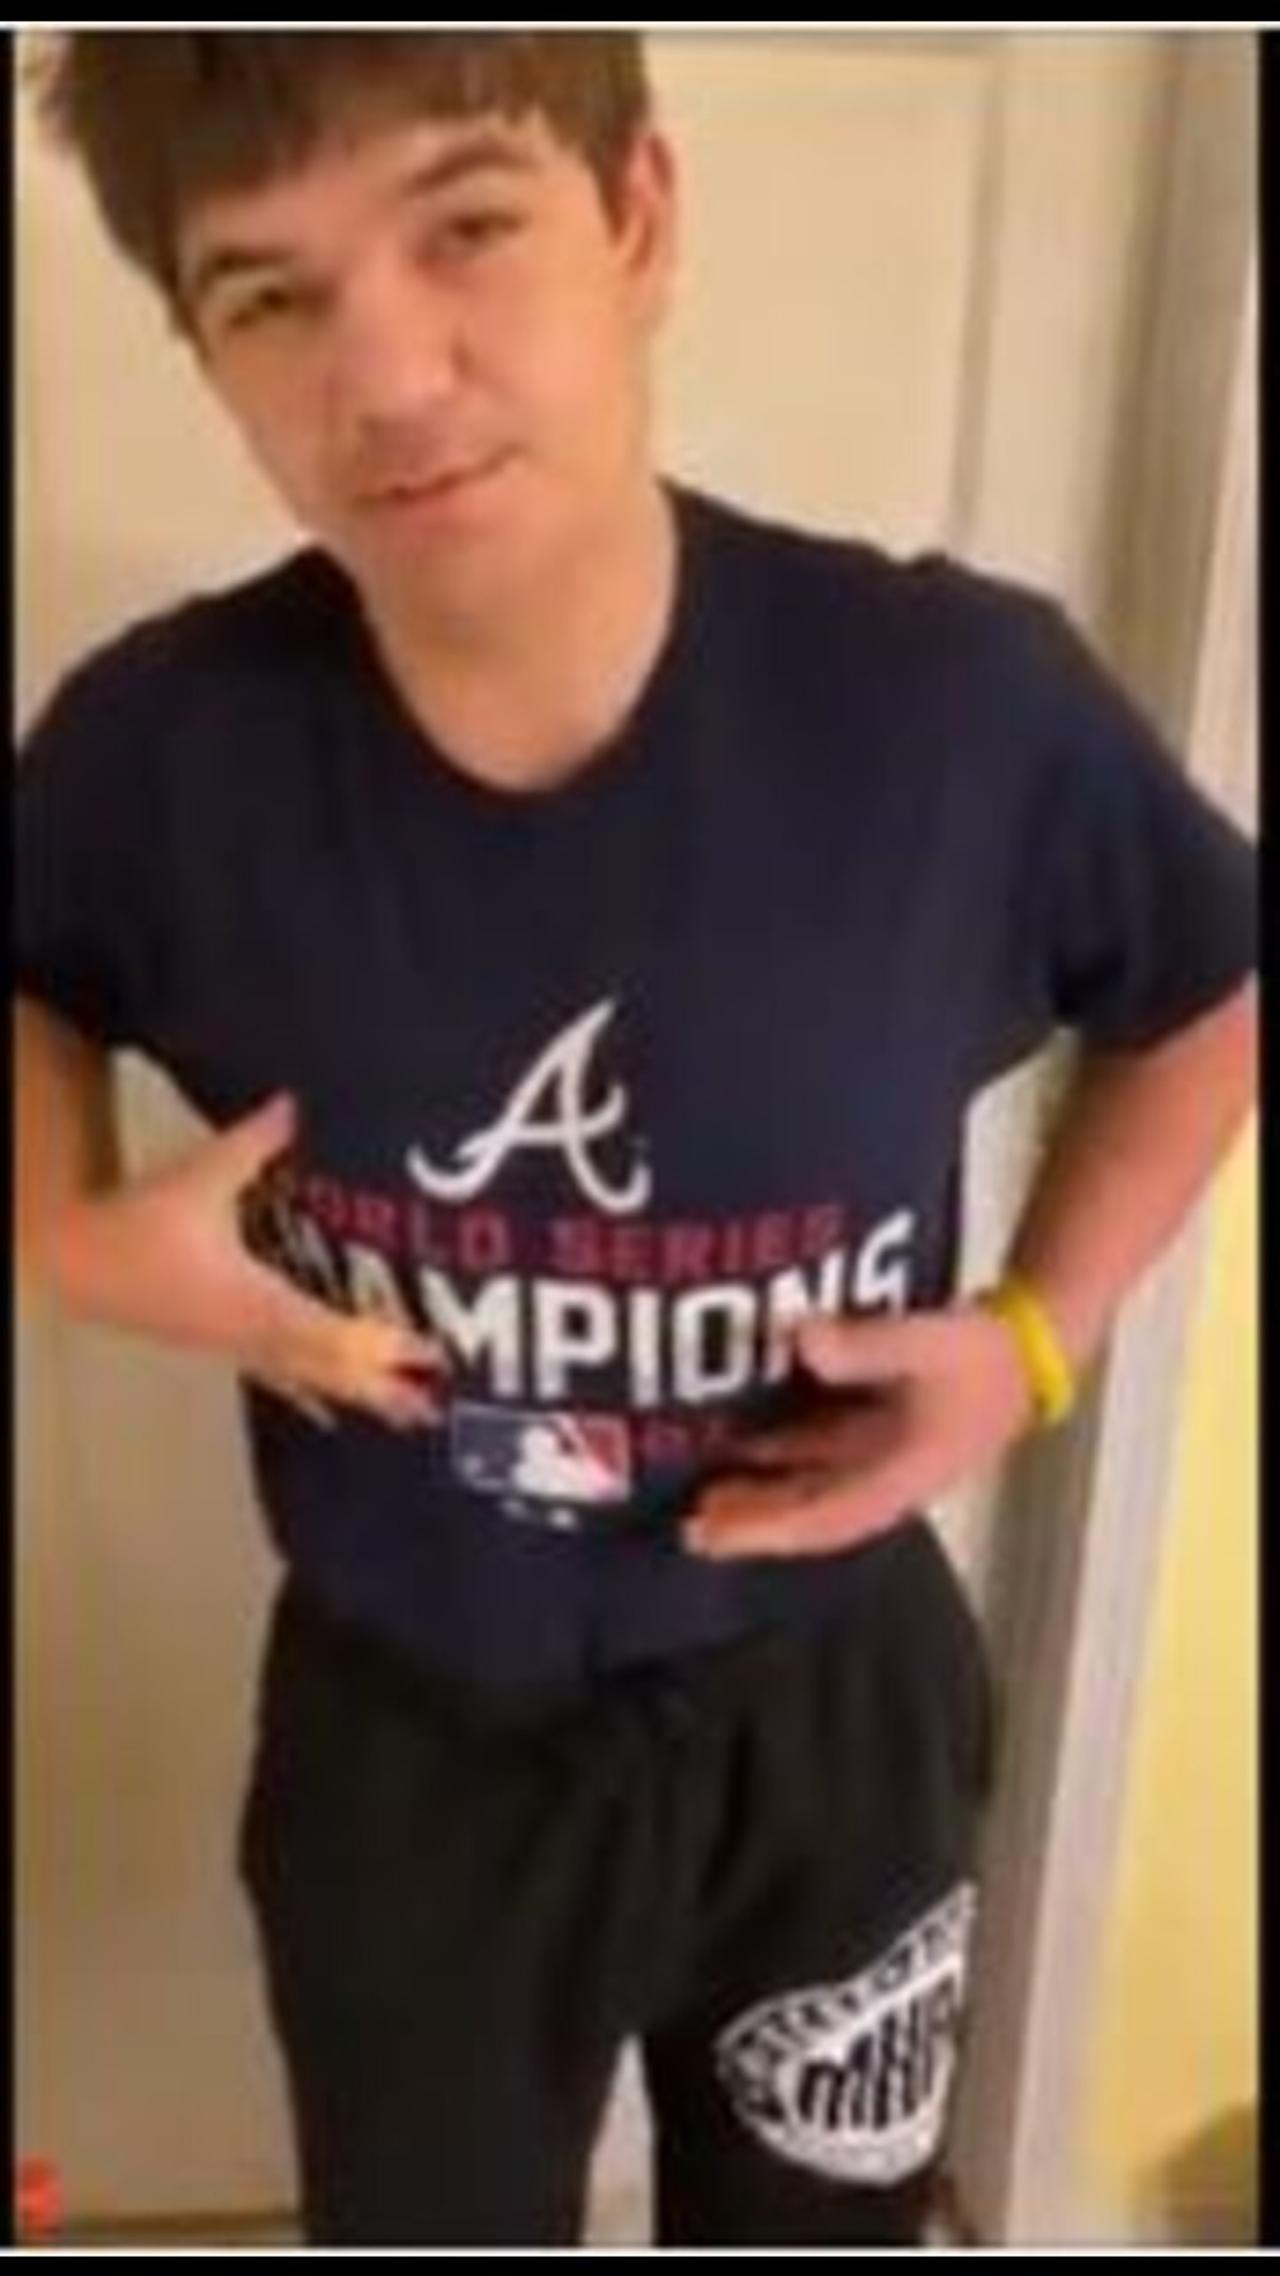 Noah shows off his Atlanta Braves World Series shirt